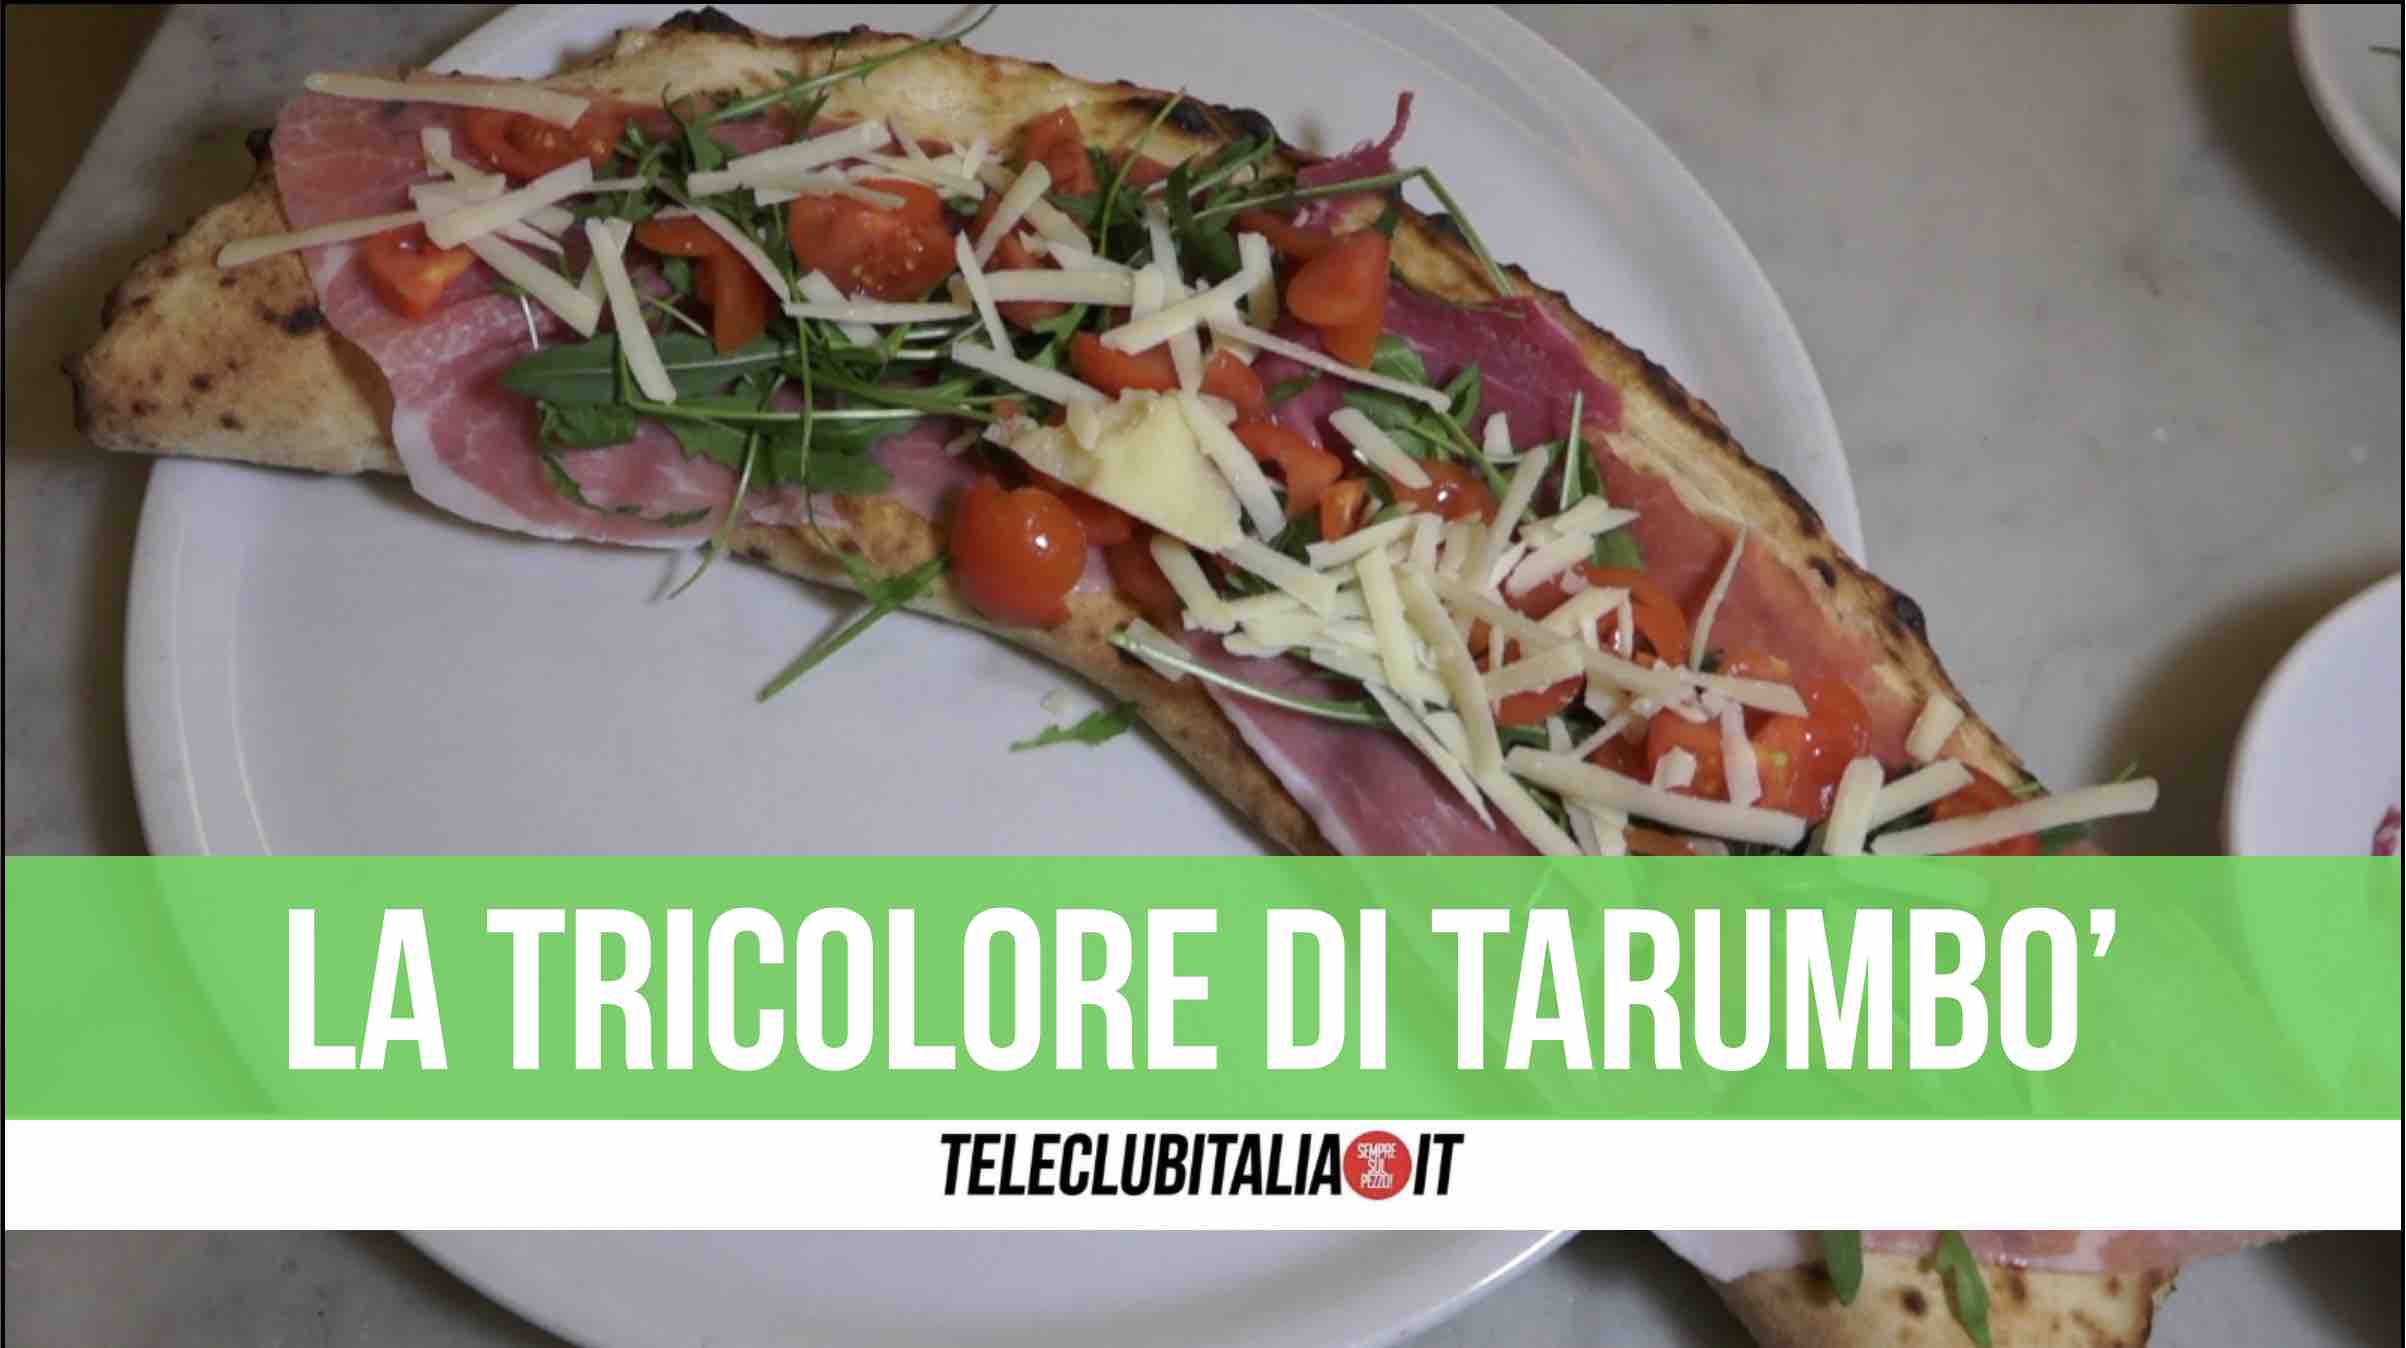 tarumbo' sant'arpino pizza